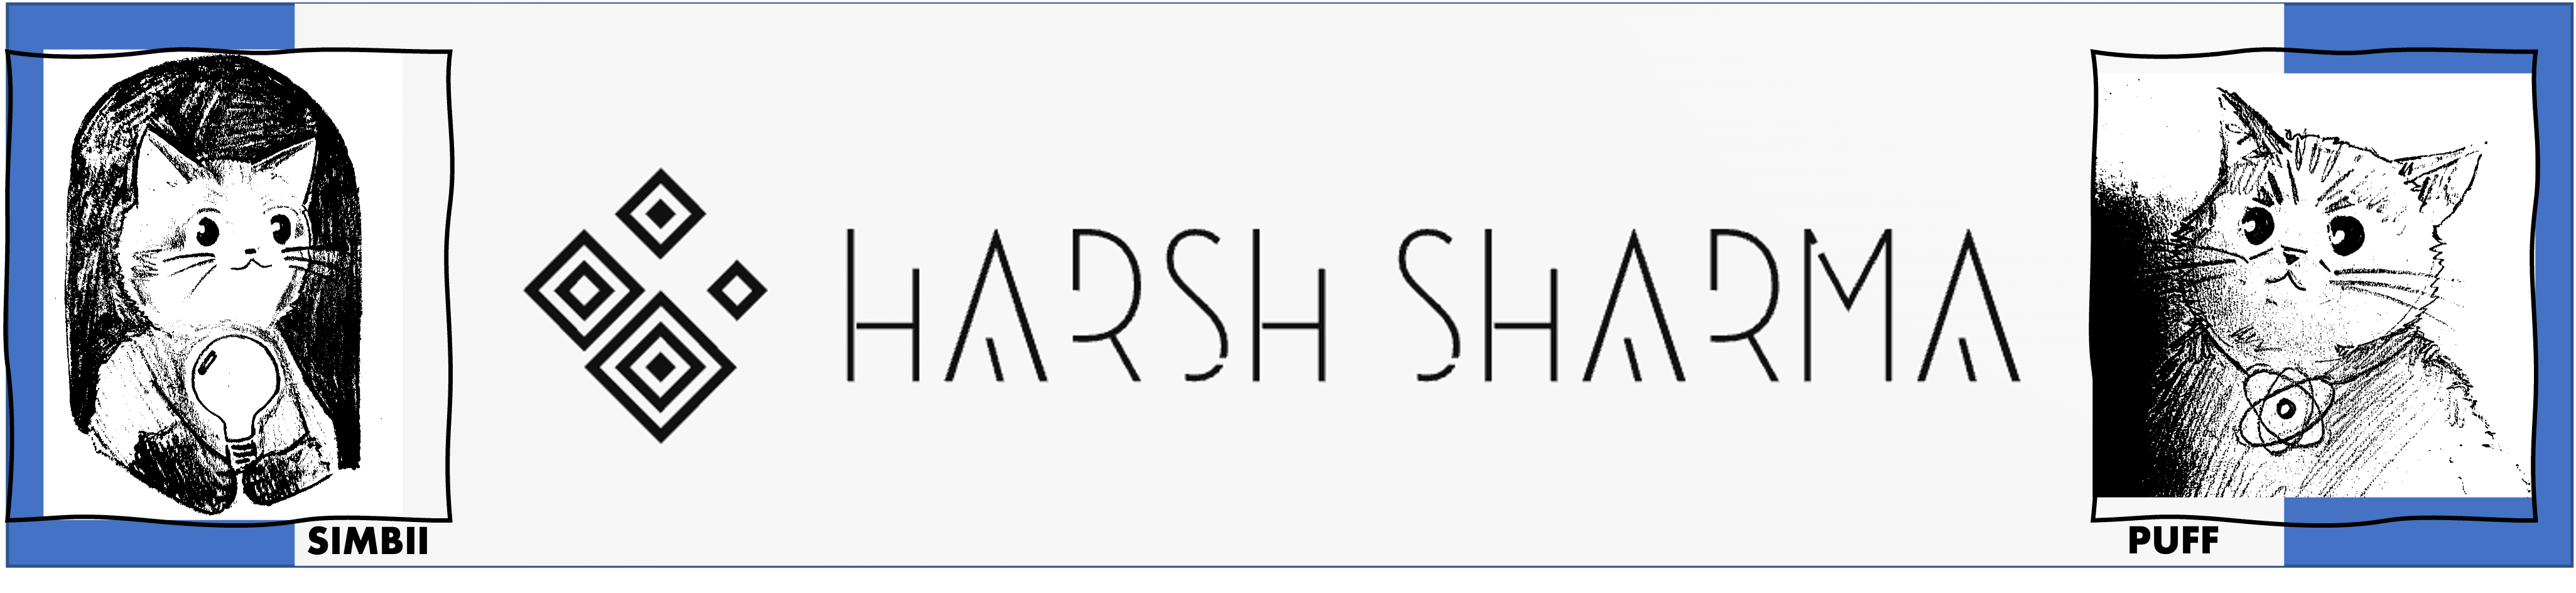 Harsh_logo